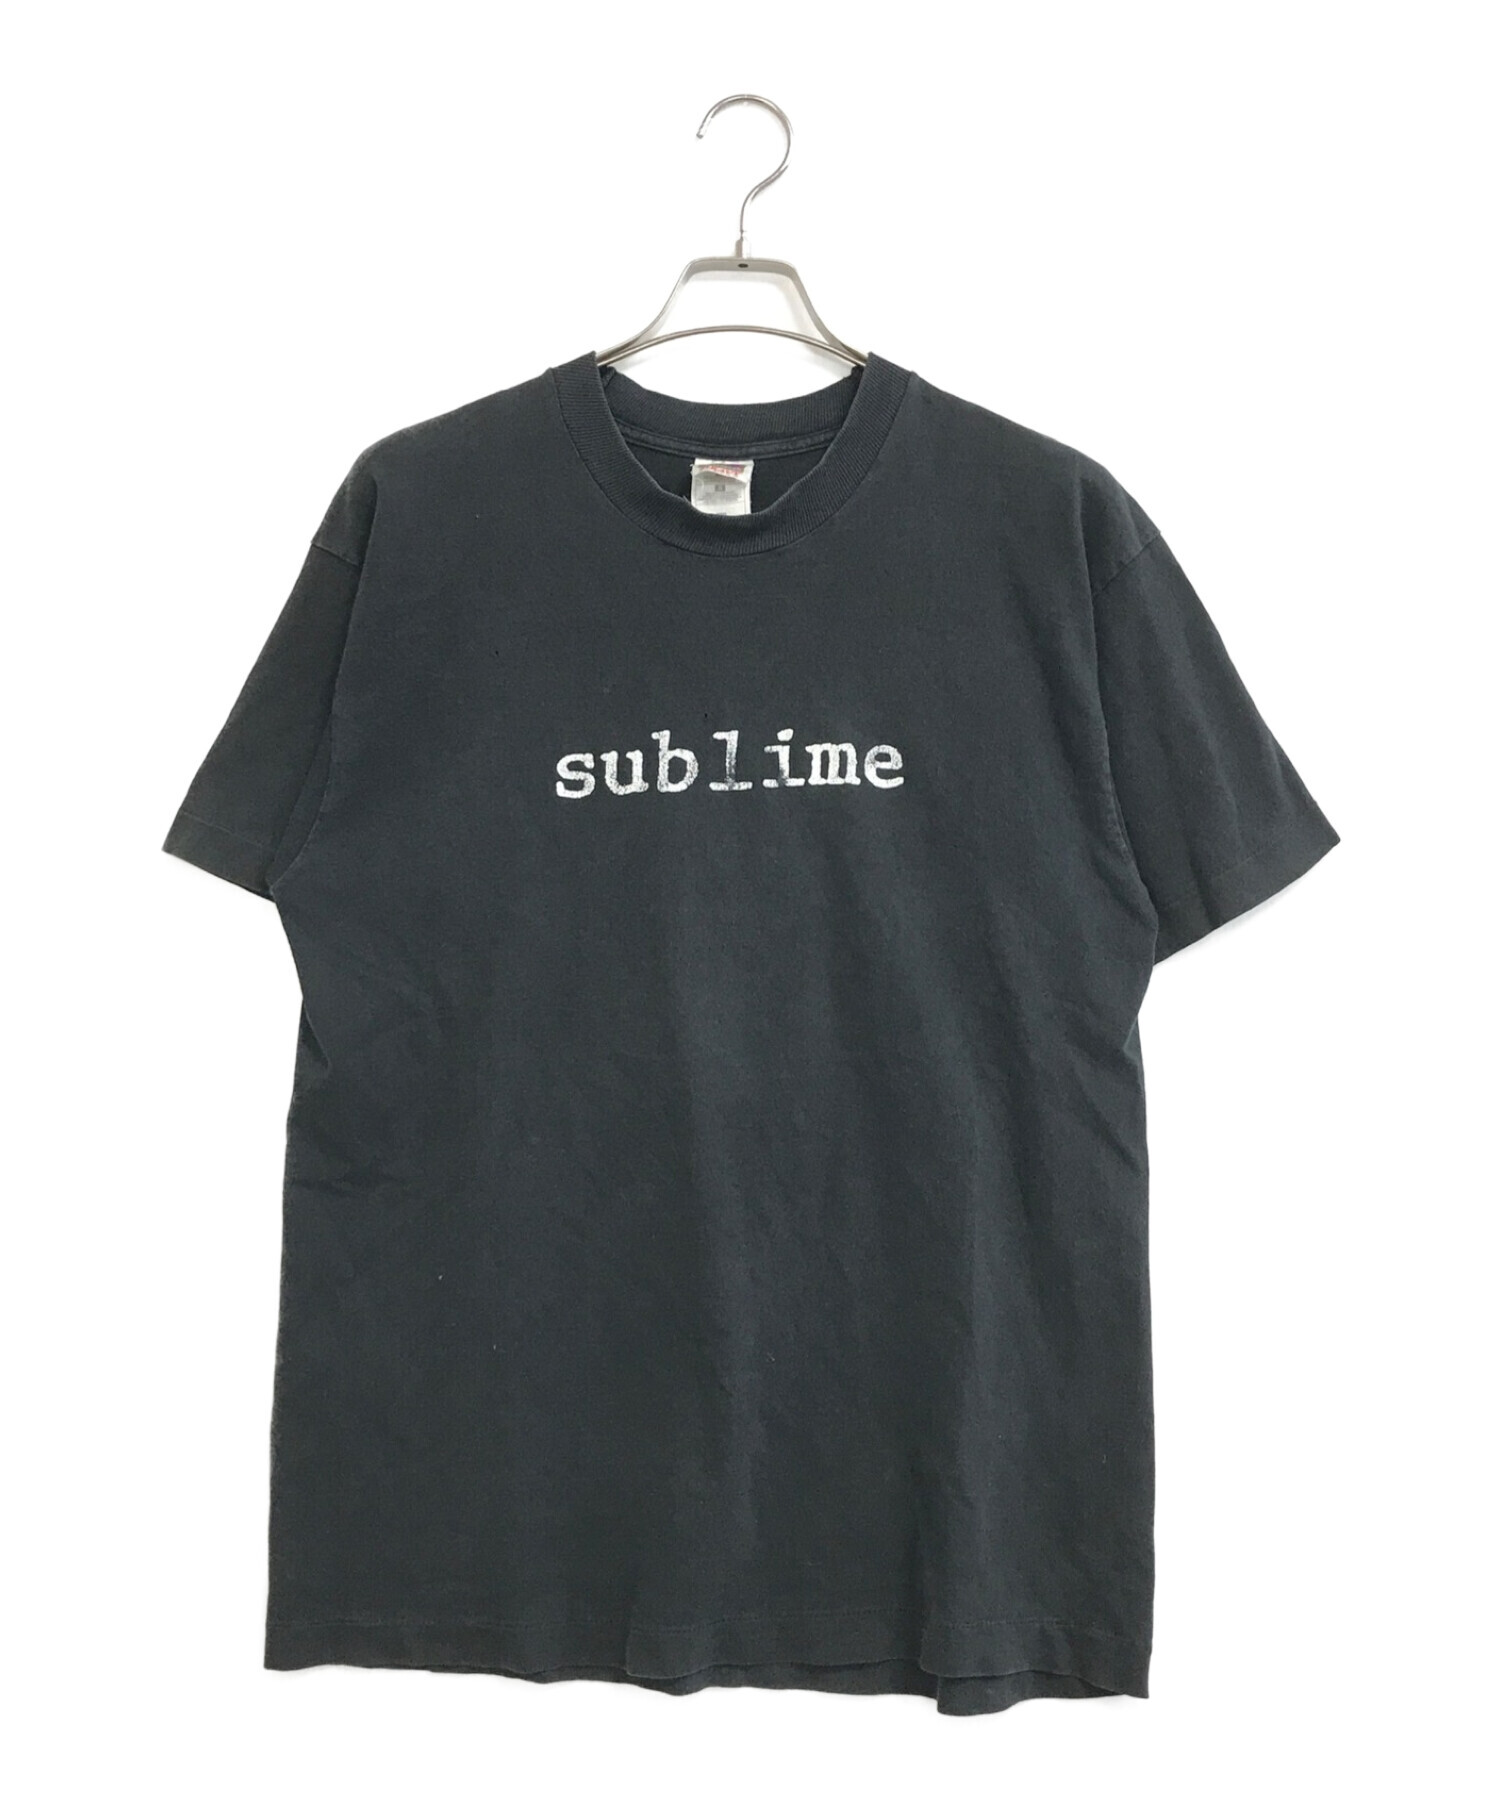 バンドTシャツ (バンドTシャツ) [古着]SUBLIME バンドTシャツ ブラック サイズ:L